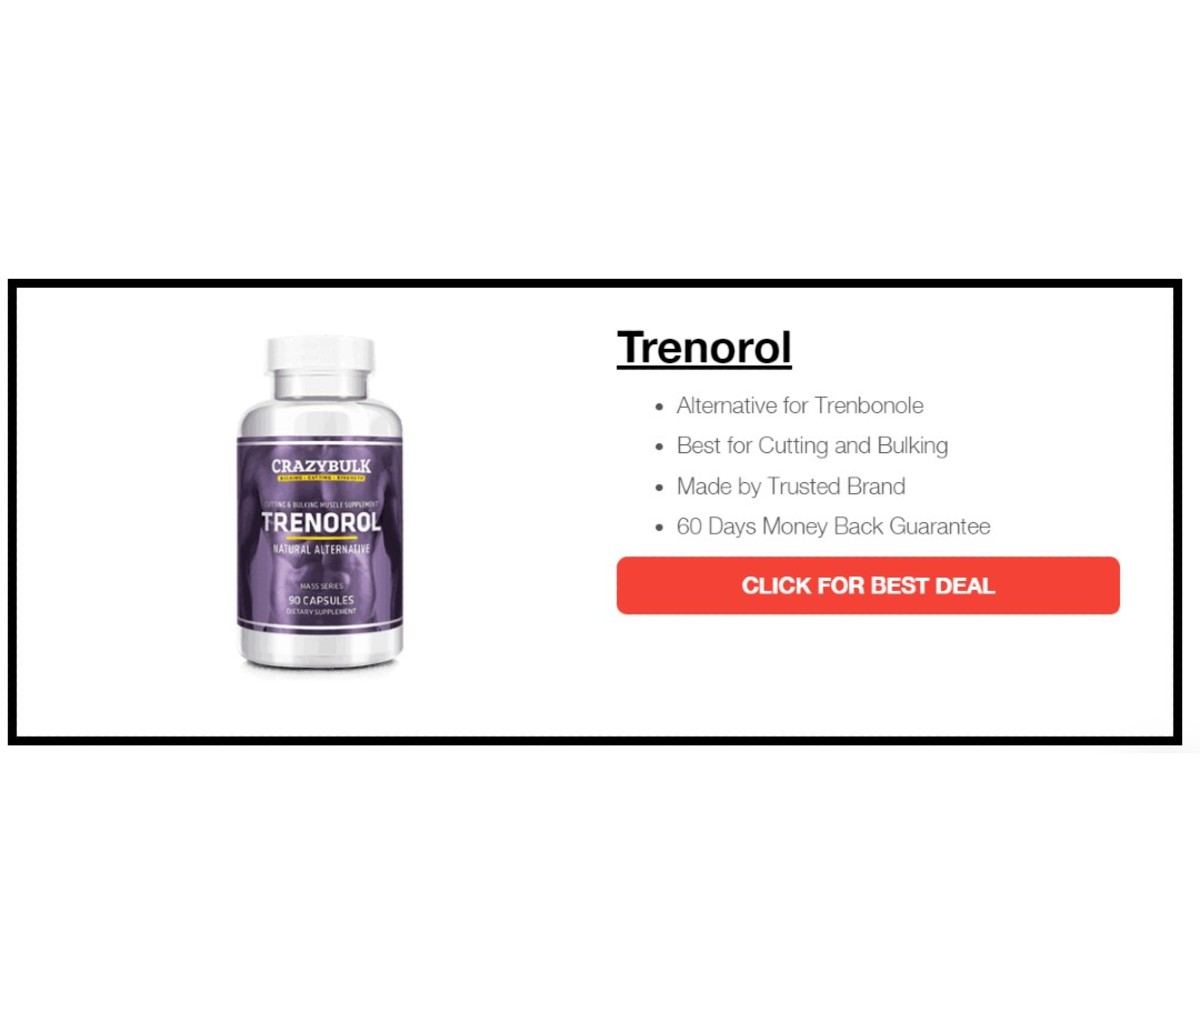 Trenorol – Best for Bulking